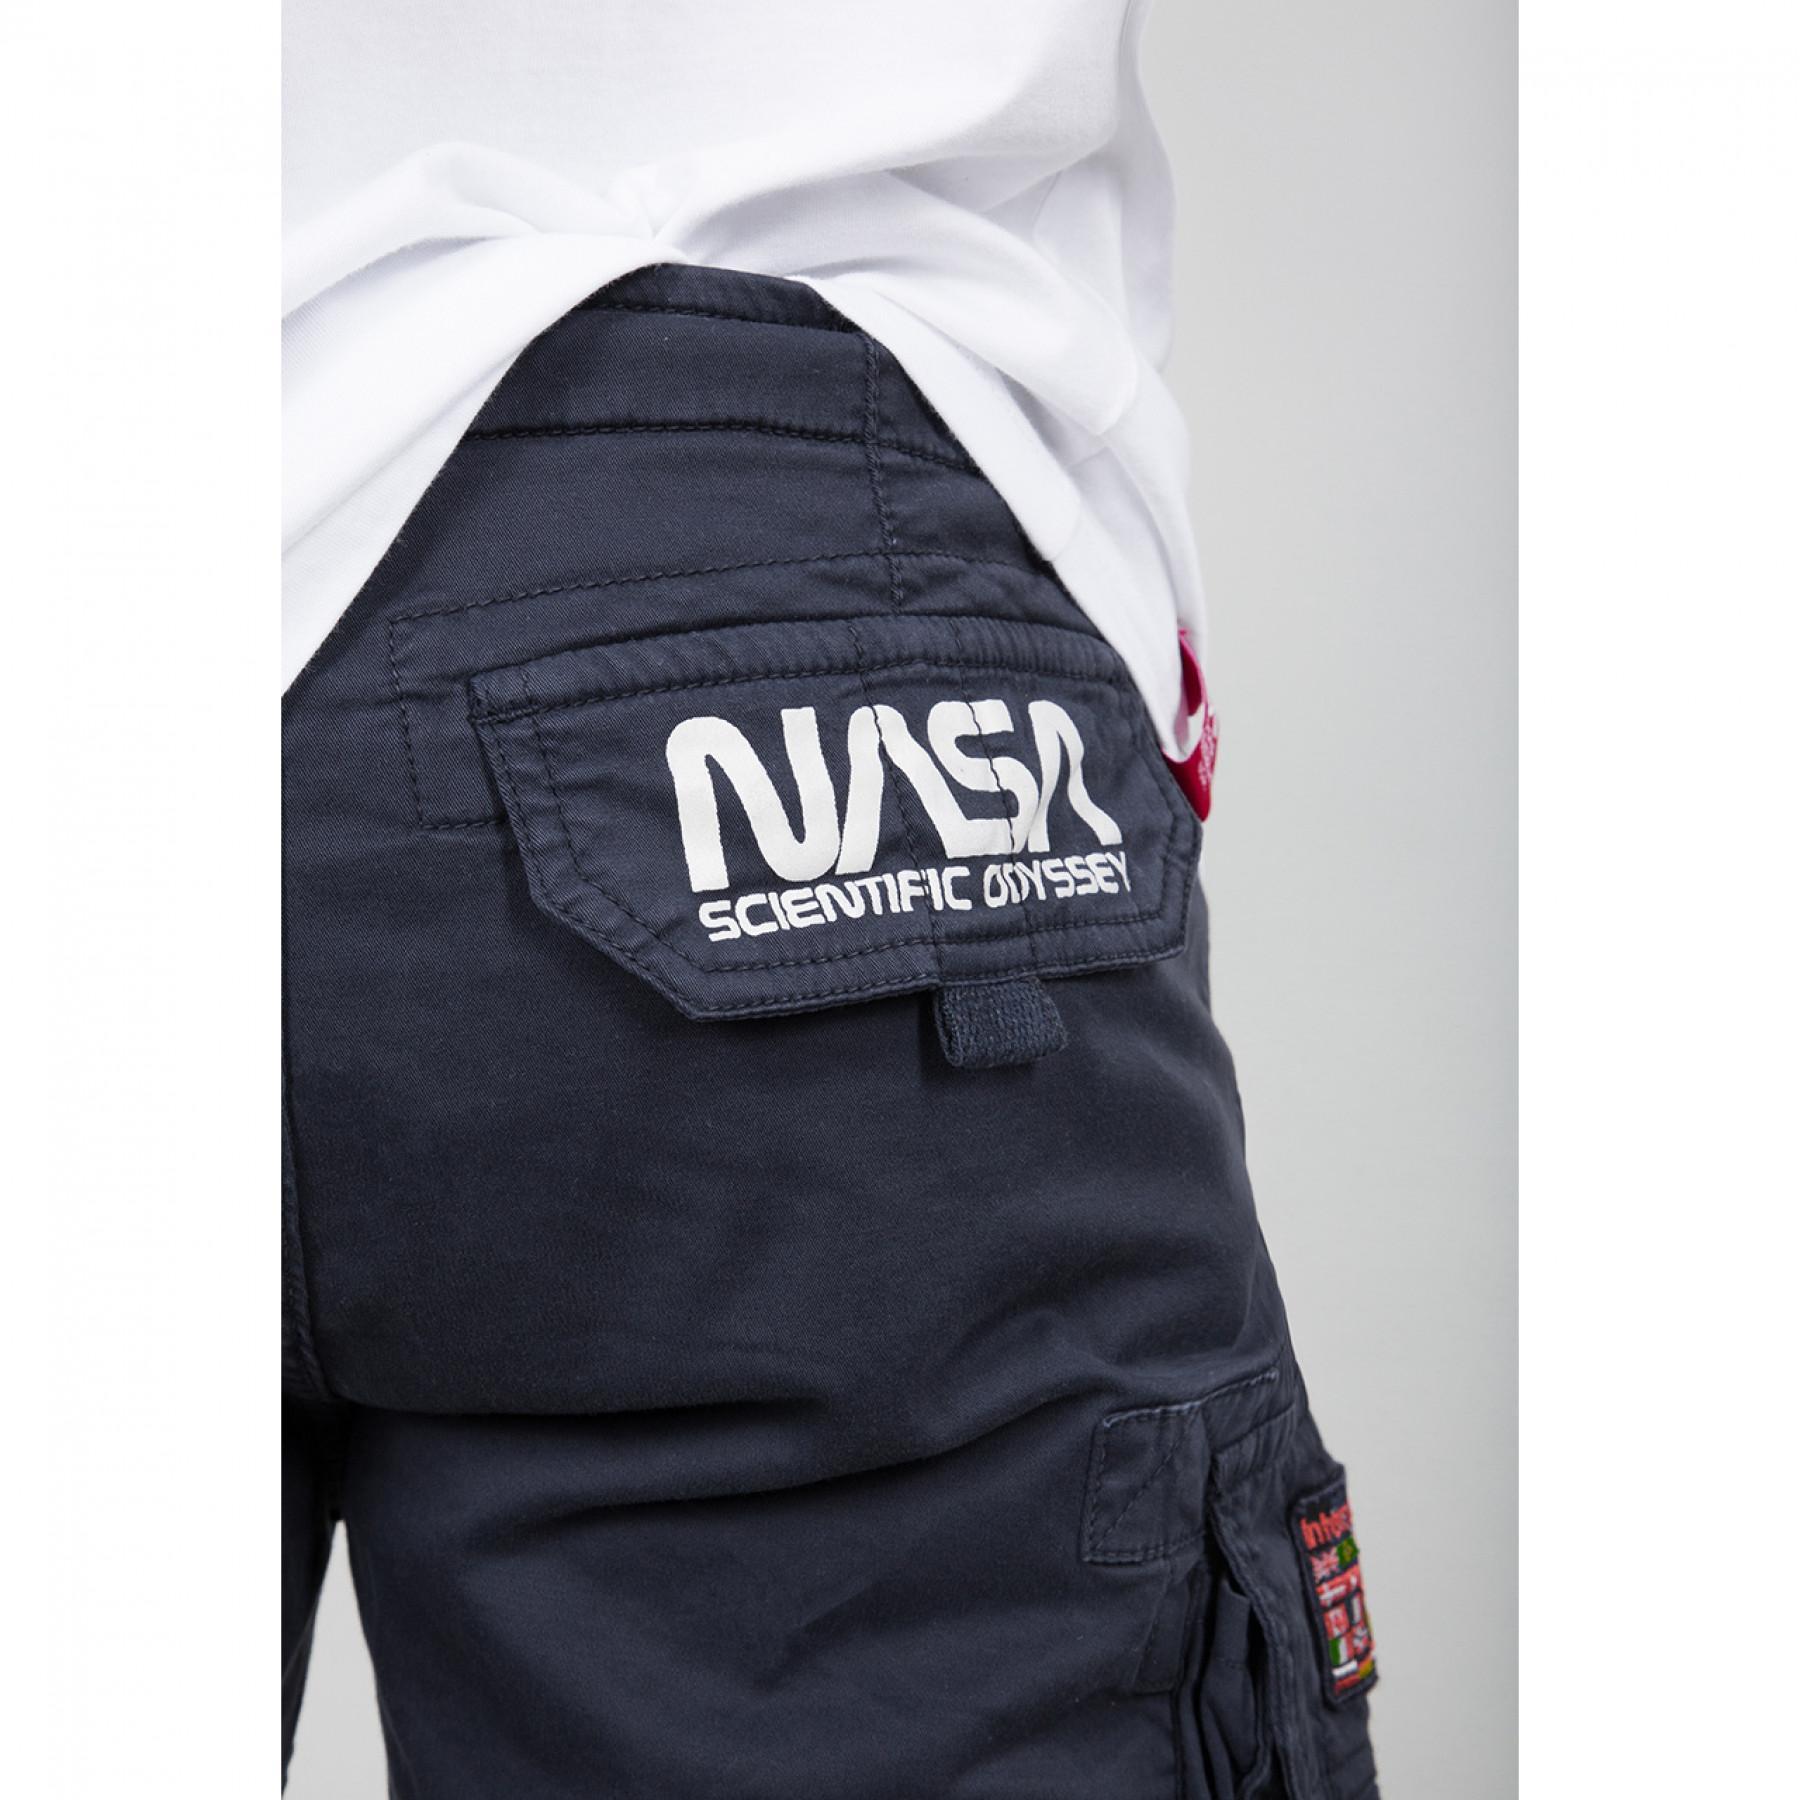 Pantalón corto Alpha Industries NASA